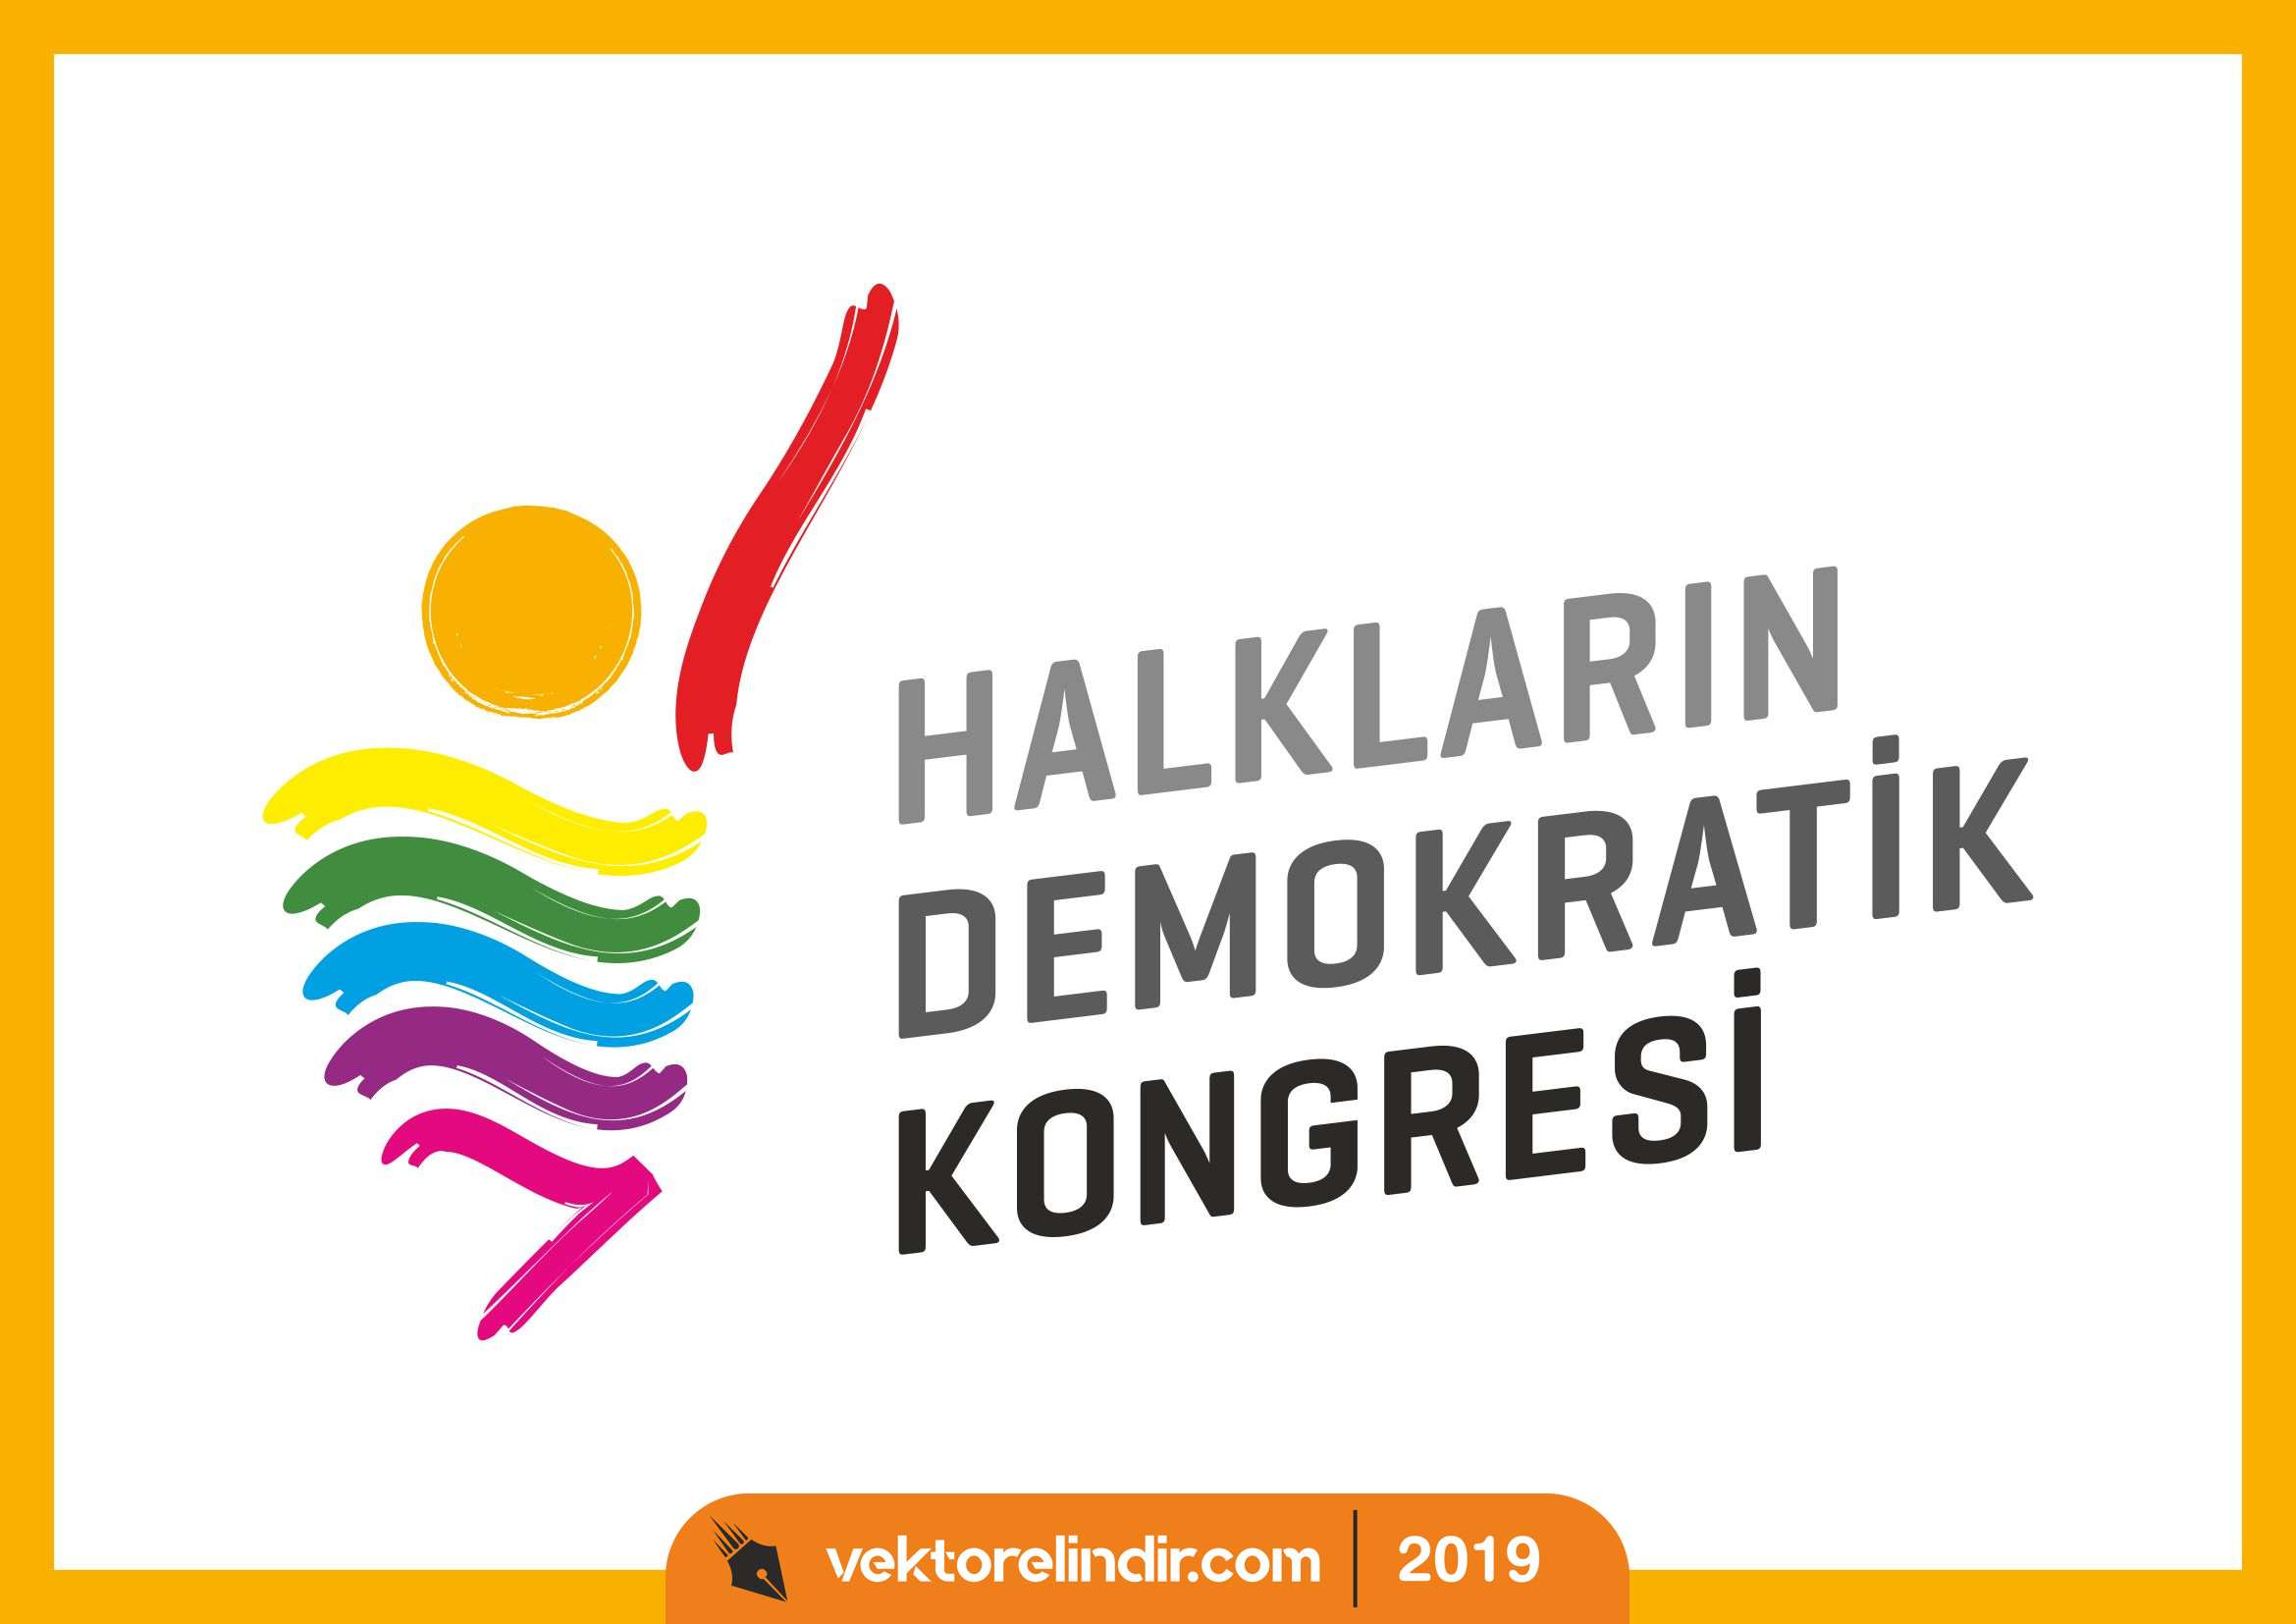 HDK, Halkların Demokratik Kongresi Logo Amblem